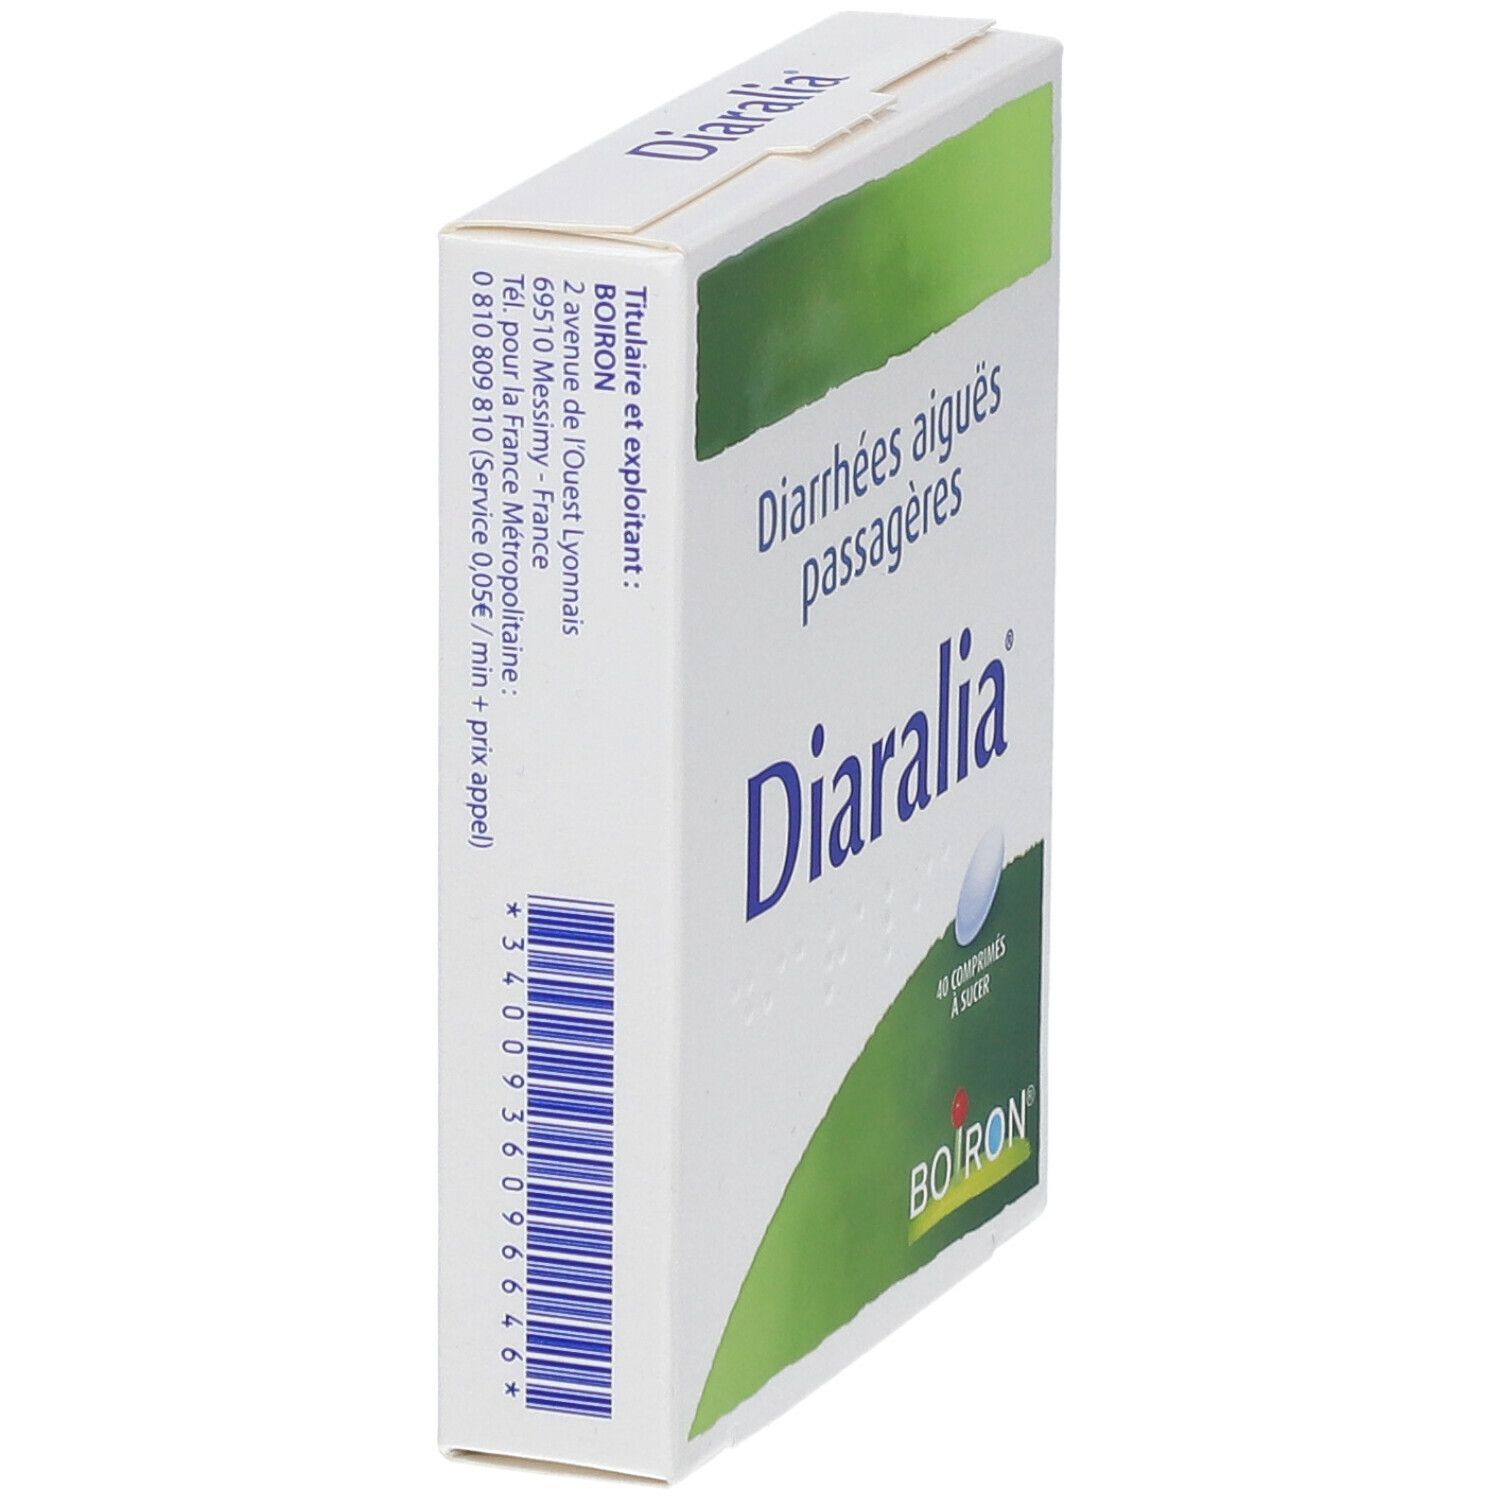 Boiron Diaralia®